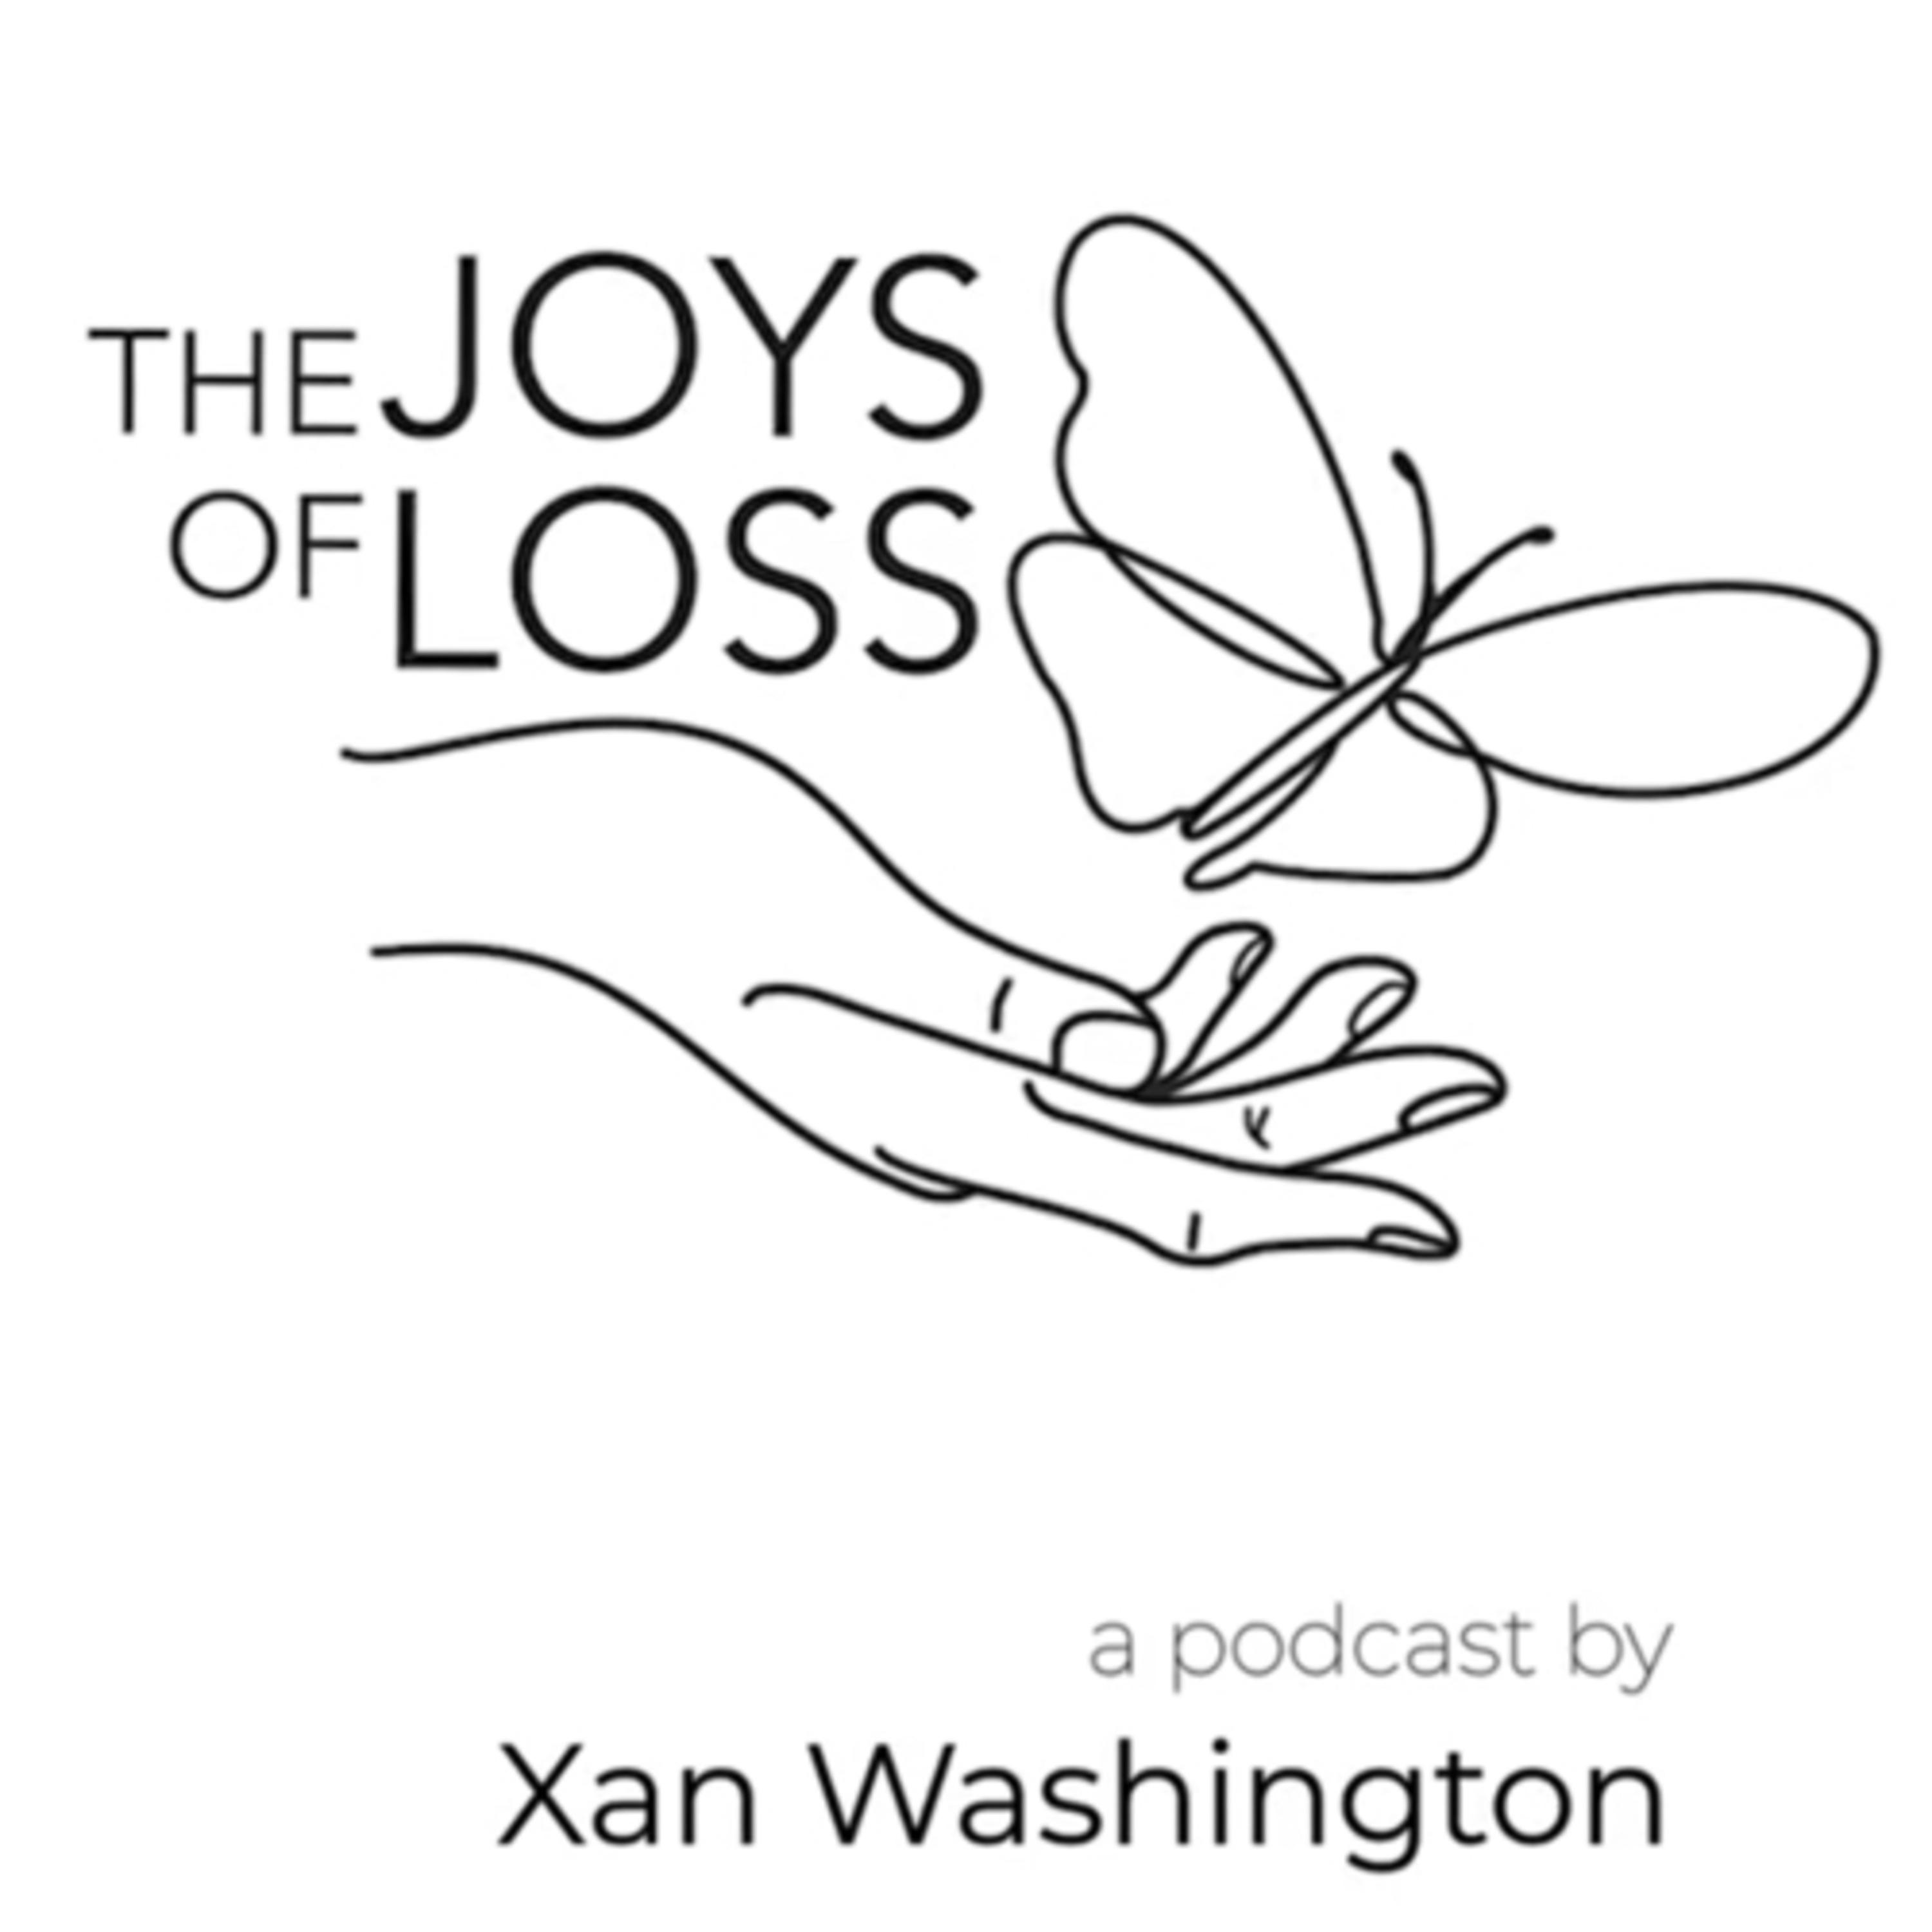 The Joys of Loss: Podcast by Xan Washington